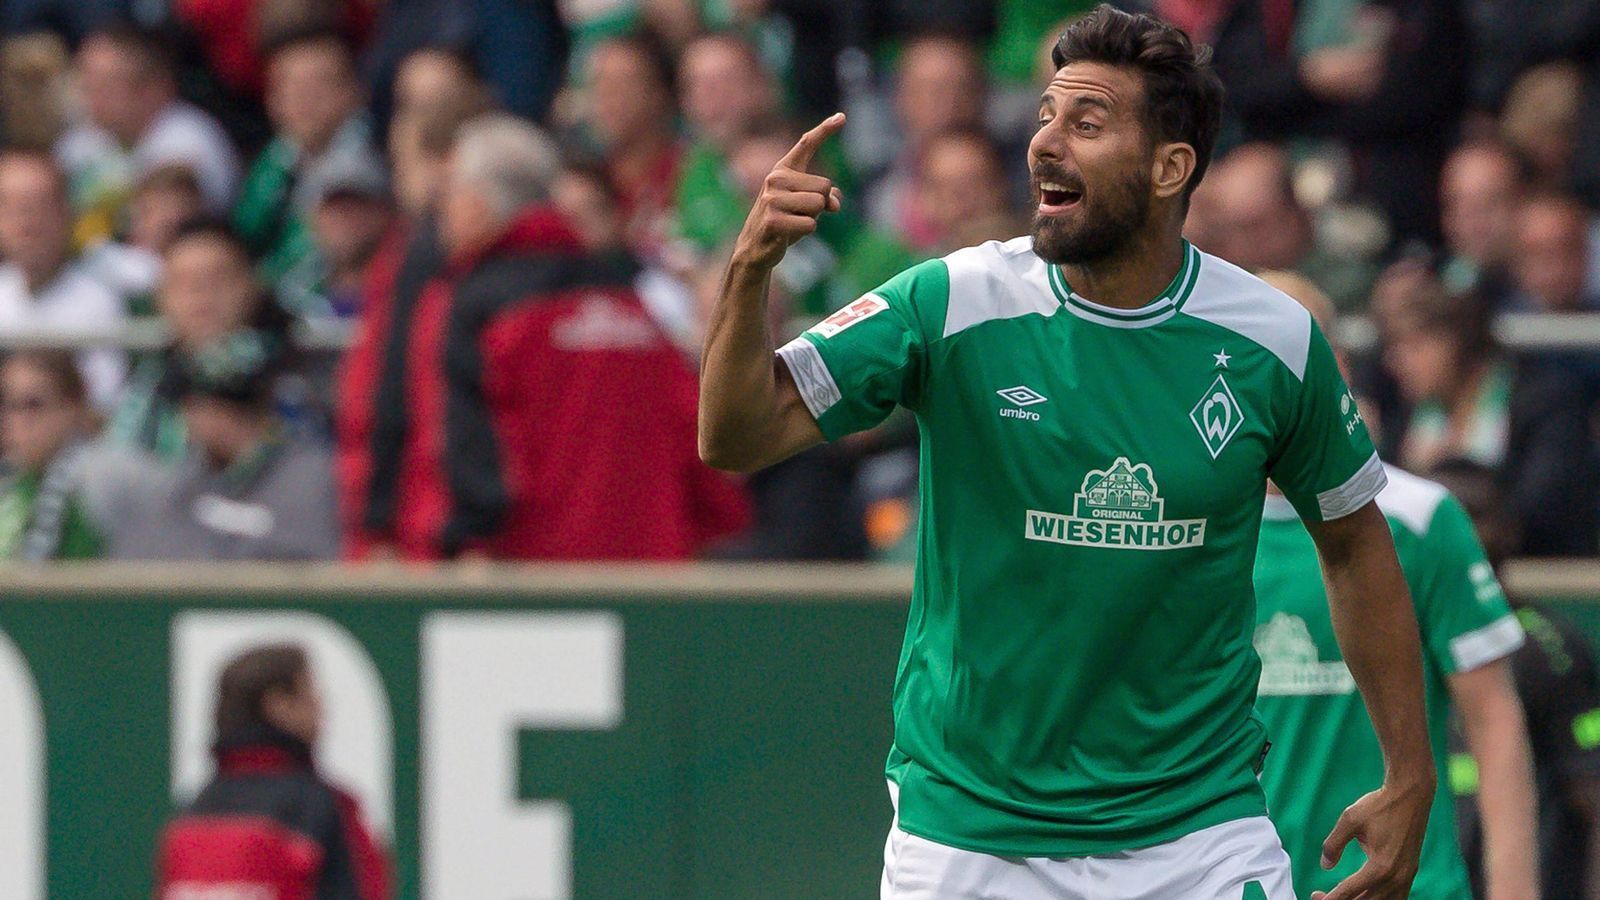 
                <strong>SV Werder Bremen</strong><br>
                Bundesliga-Rekordtorschütze: Claudio Pizarro - Bundesliga-Tore: 109 - Vereins-Rekordtorschütze: Claudio Pizarro - Pflichtspiel-Tore: 153
              